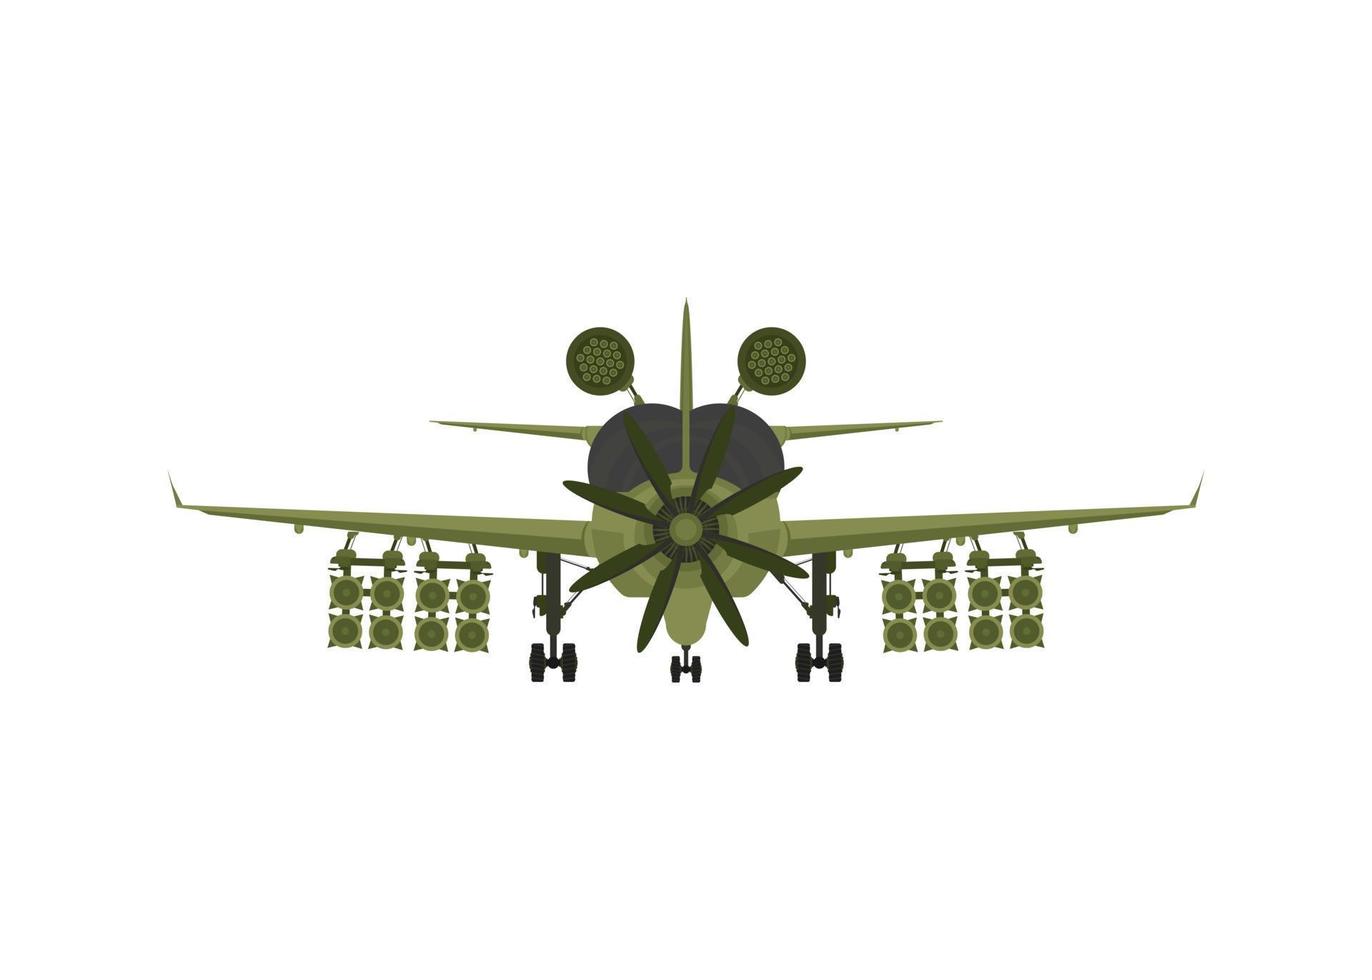 caza, aviones militares con misiles a bordo. ilustración aislada sobre fondo blanco. ilustración vectorial vector